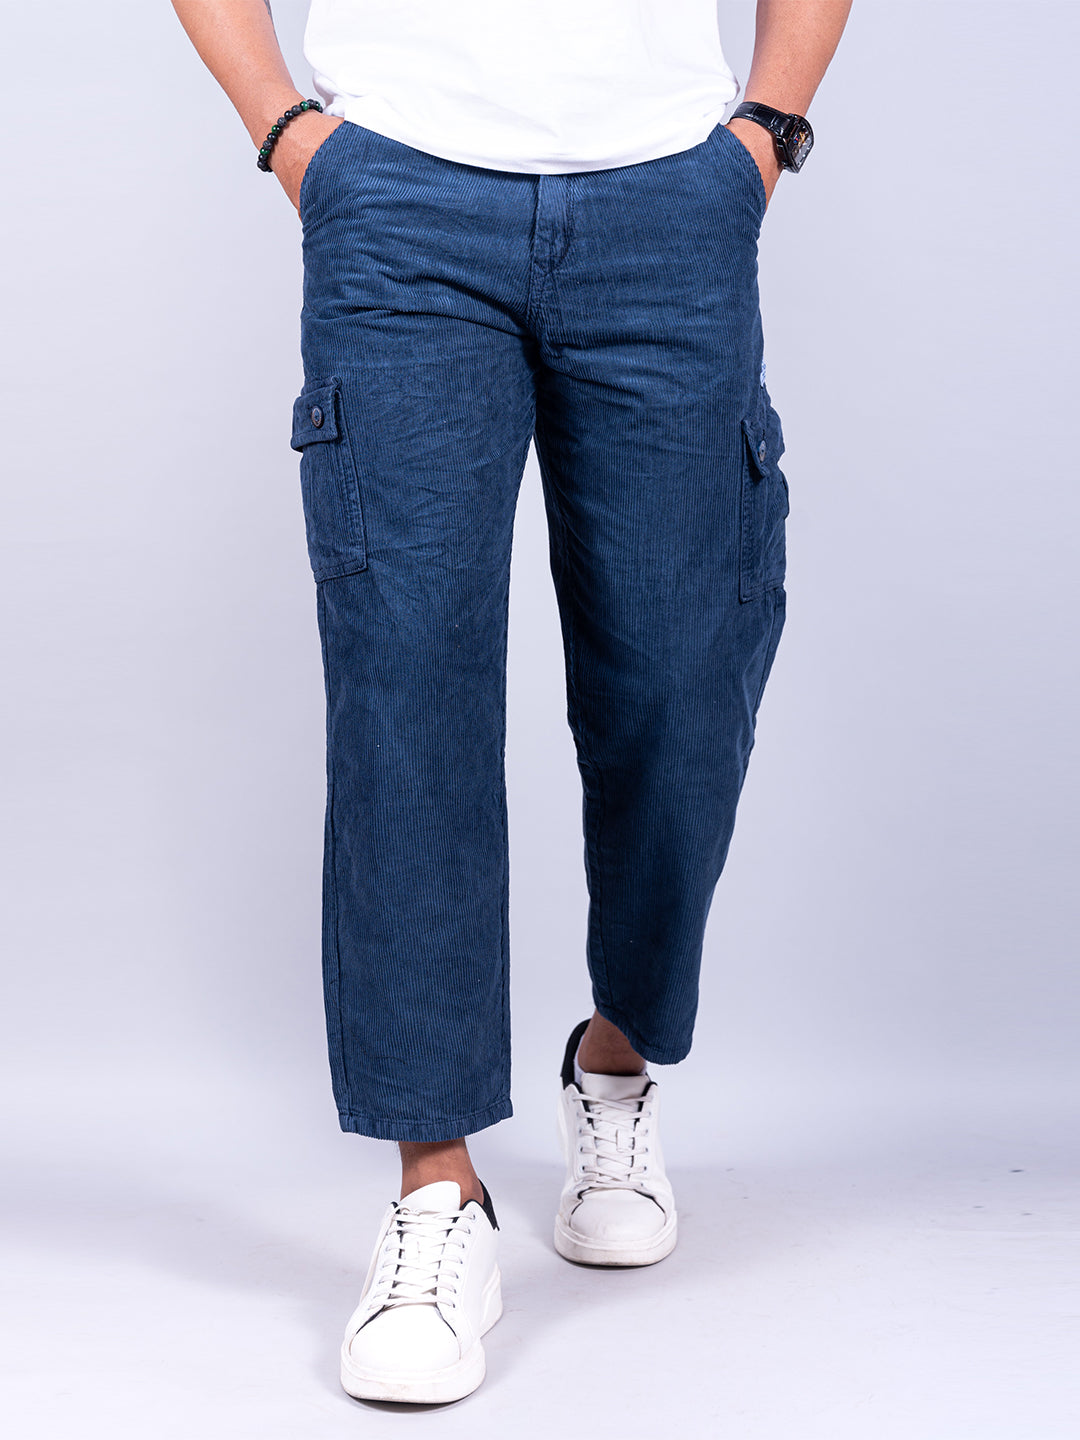 Buy Trendy Cargo Pants Online for Men, Women & Kids | Myntra